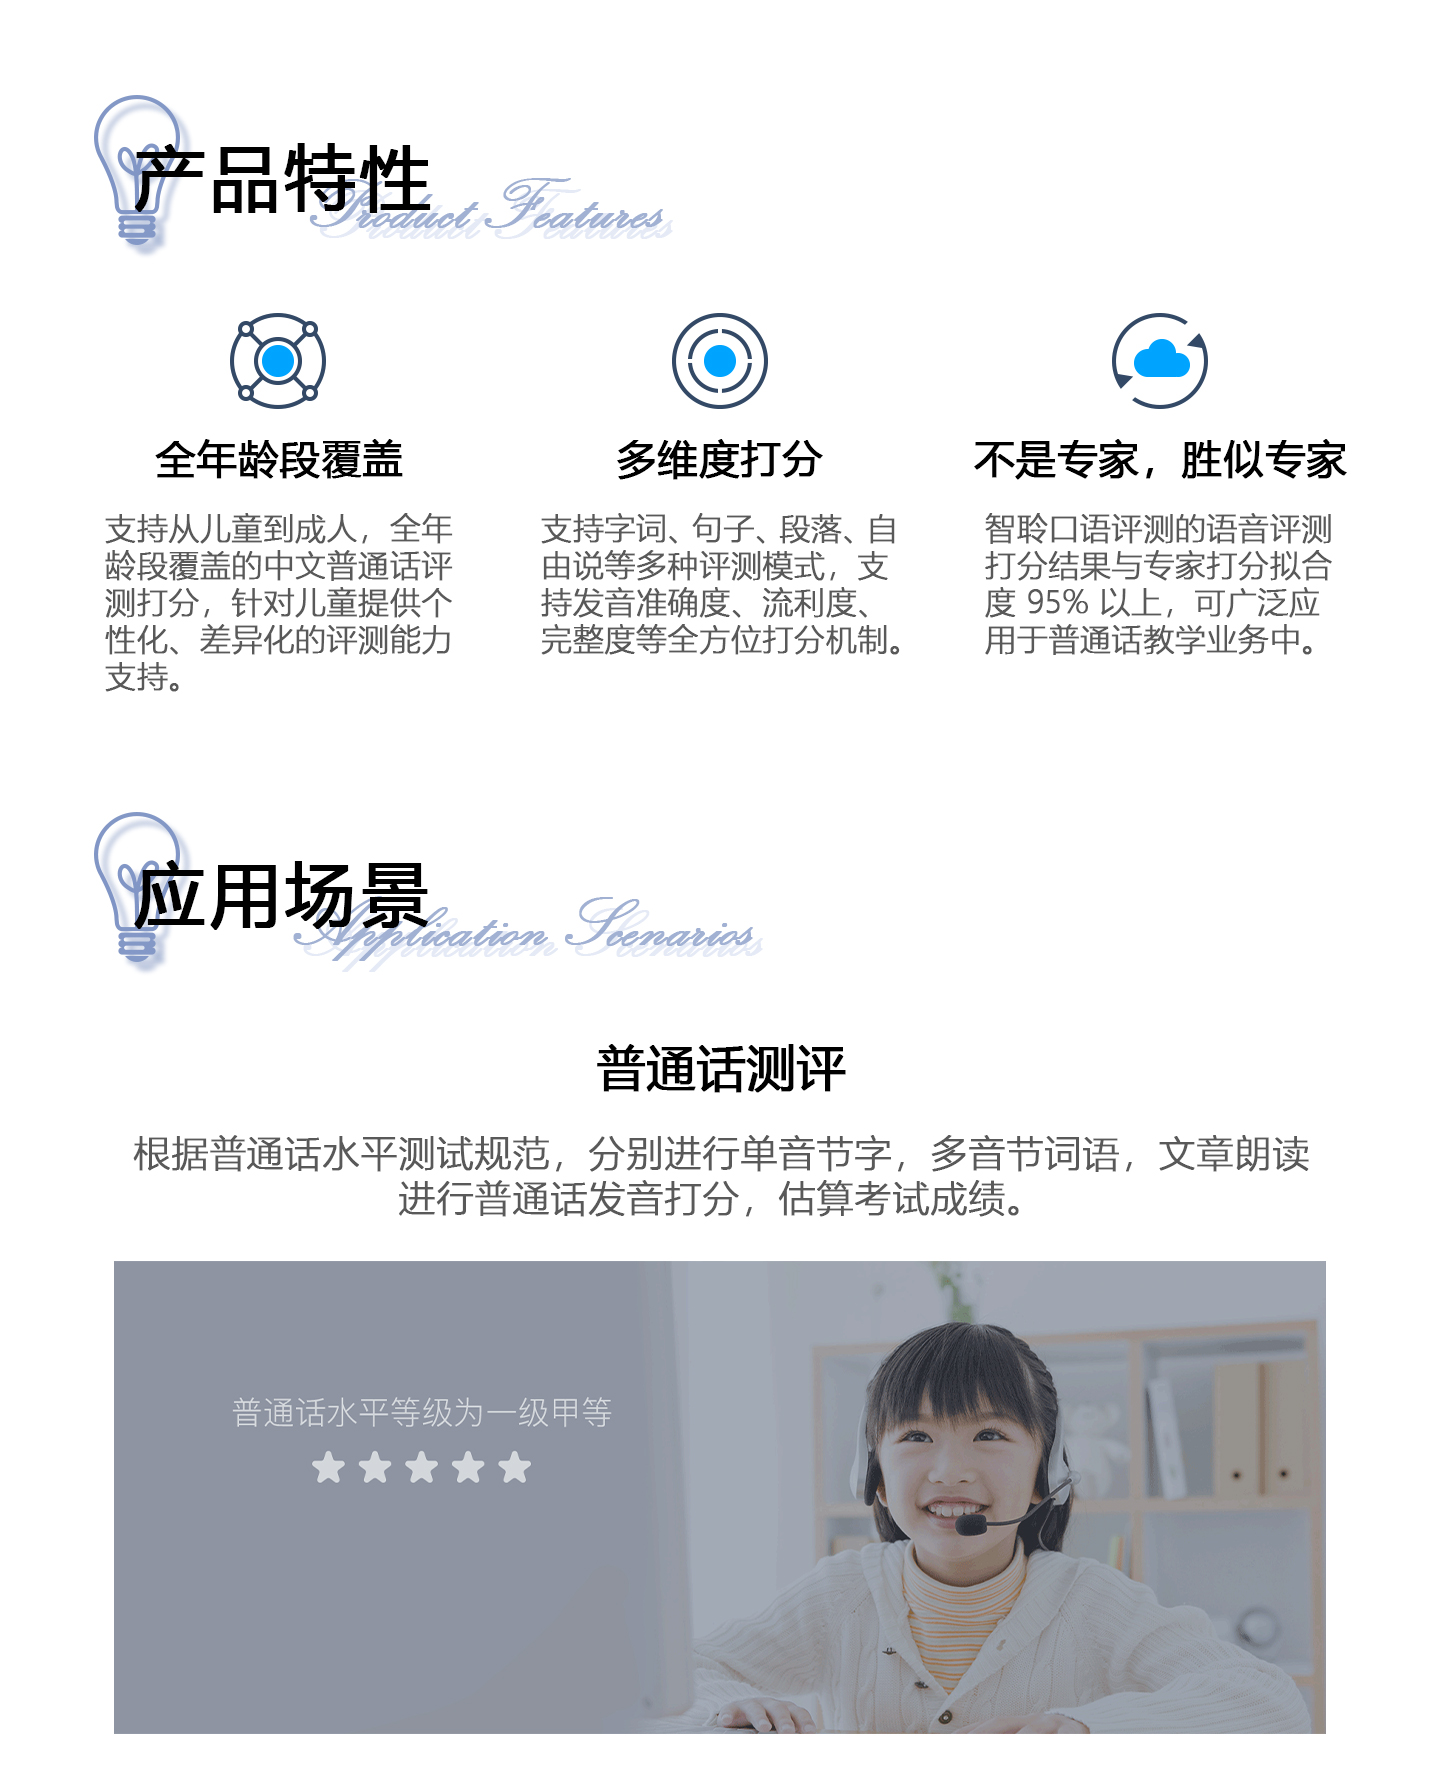 口语测评中文1440_02.jpg